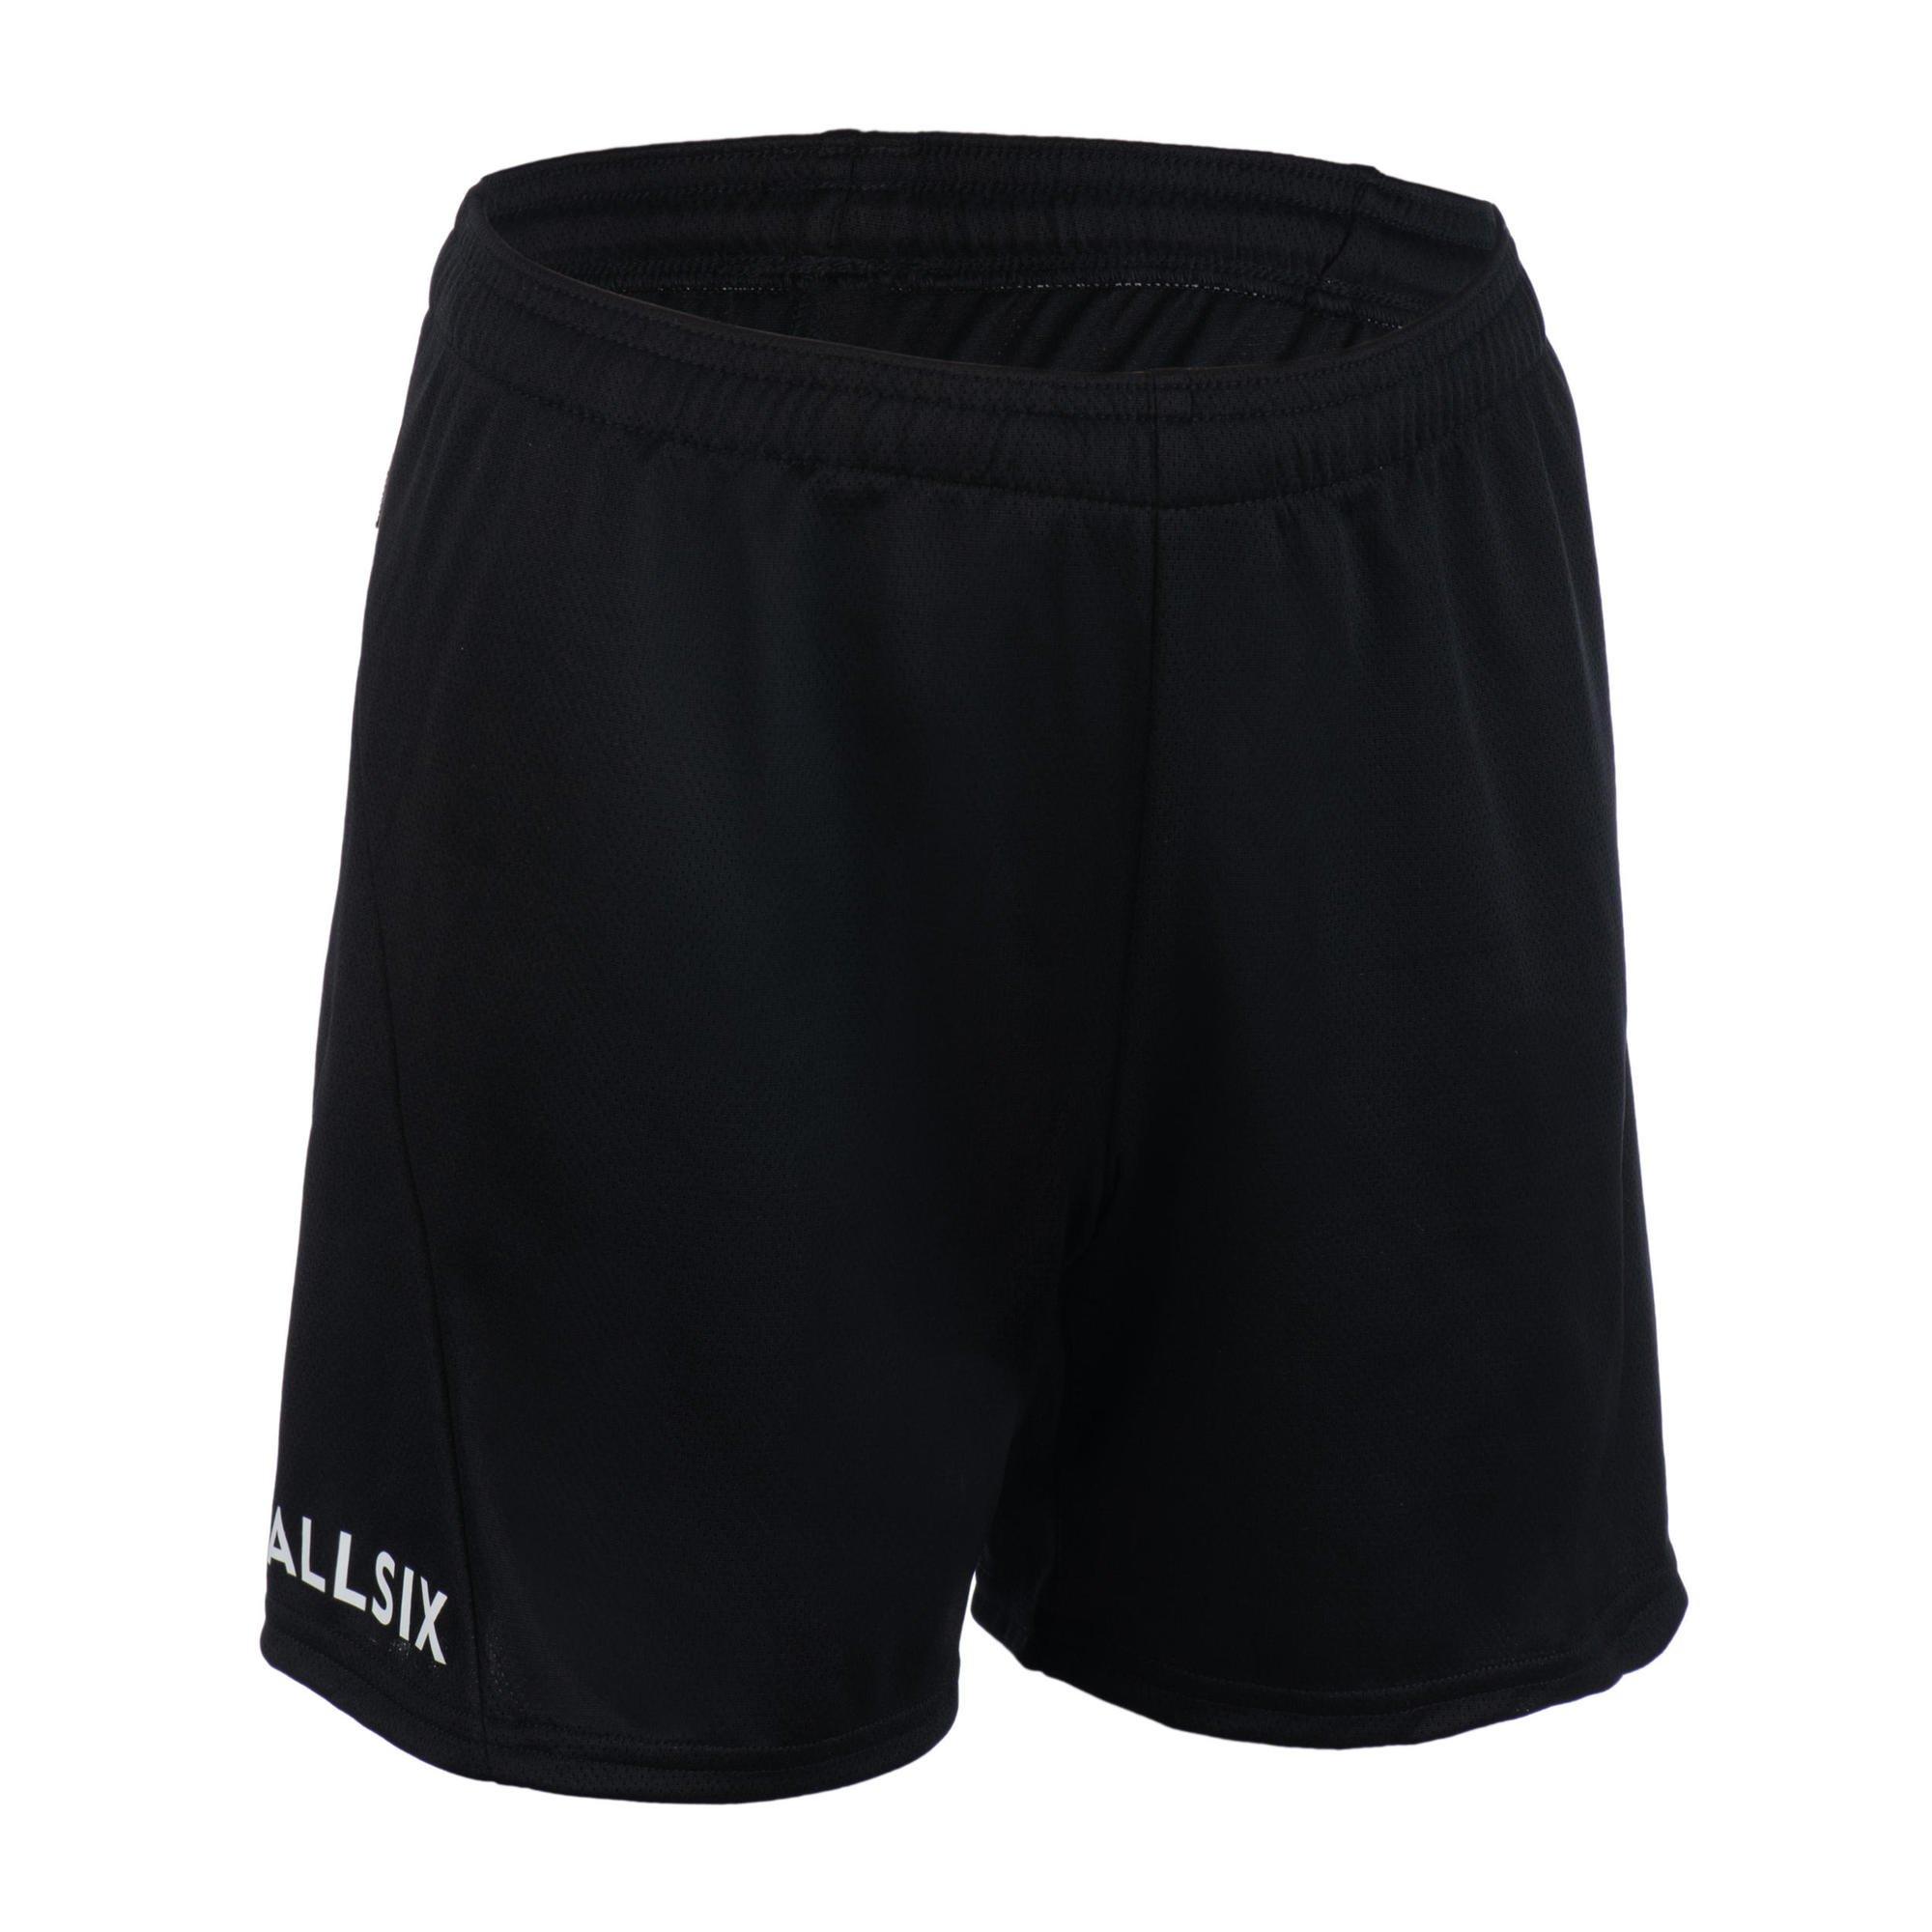 Волейбольные шорты Decathlon V100 Allsix, черный волейбольные шорты женские v100 черные allsix черный